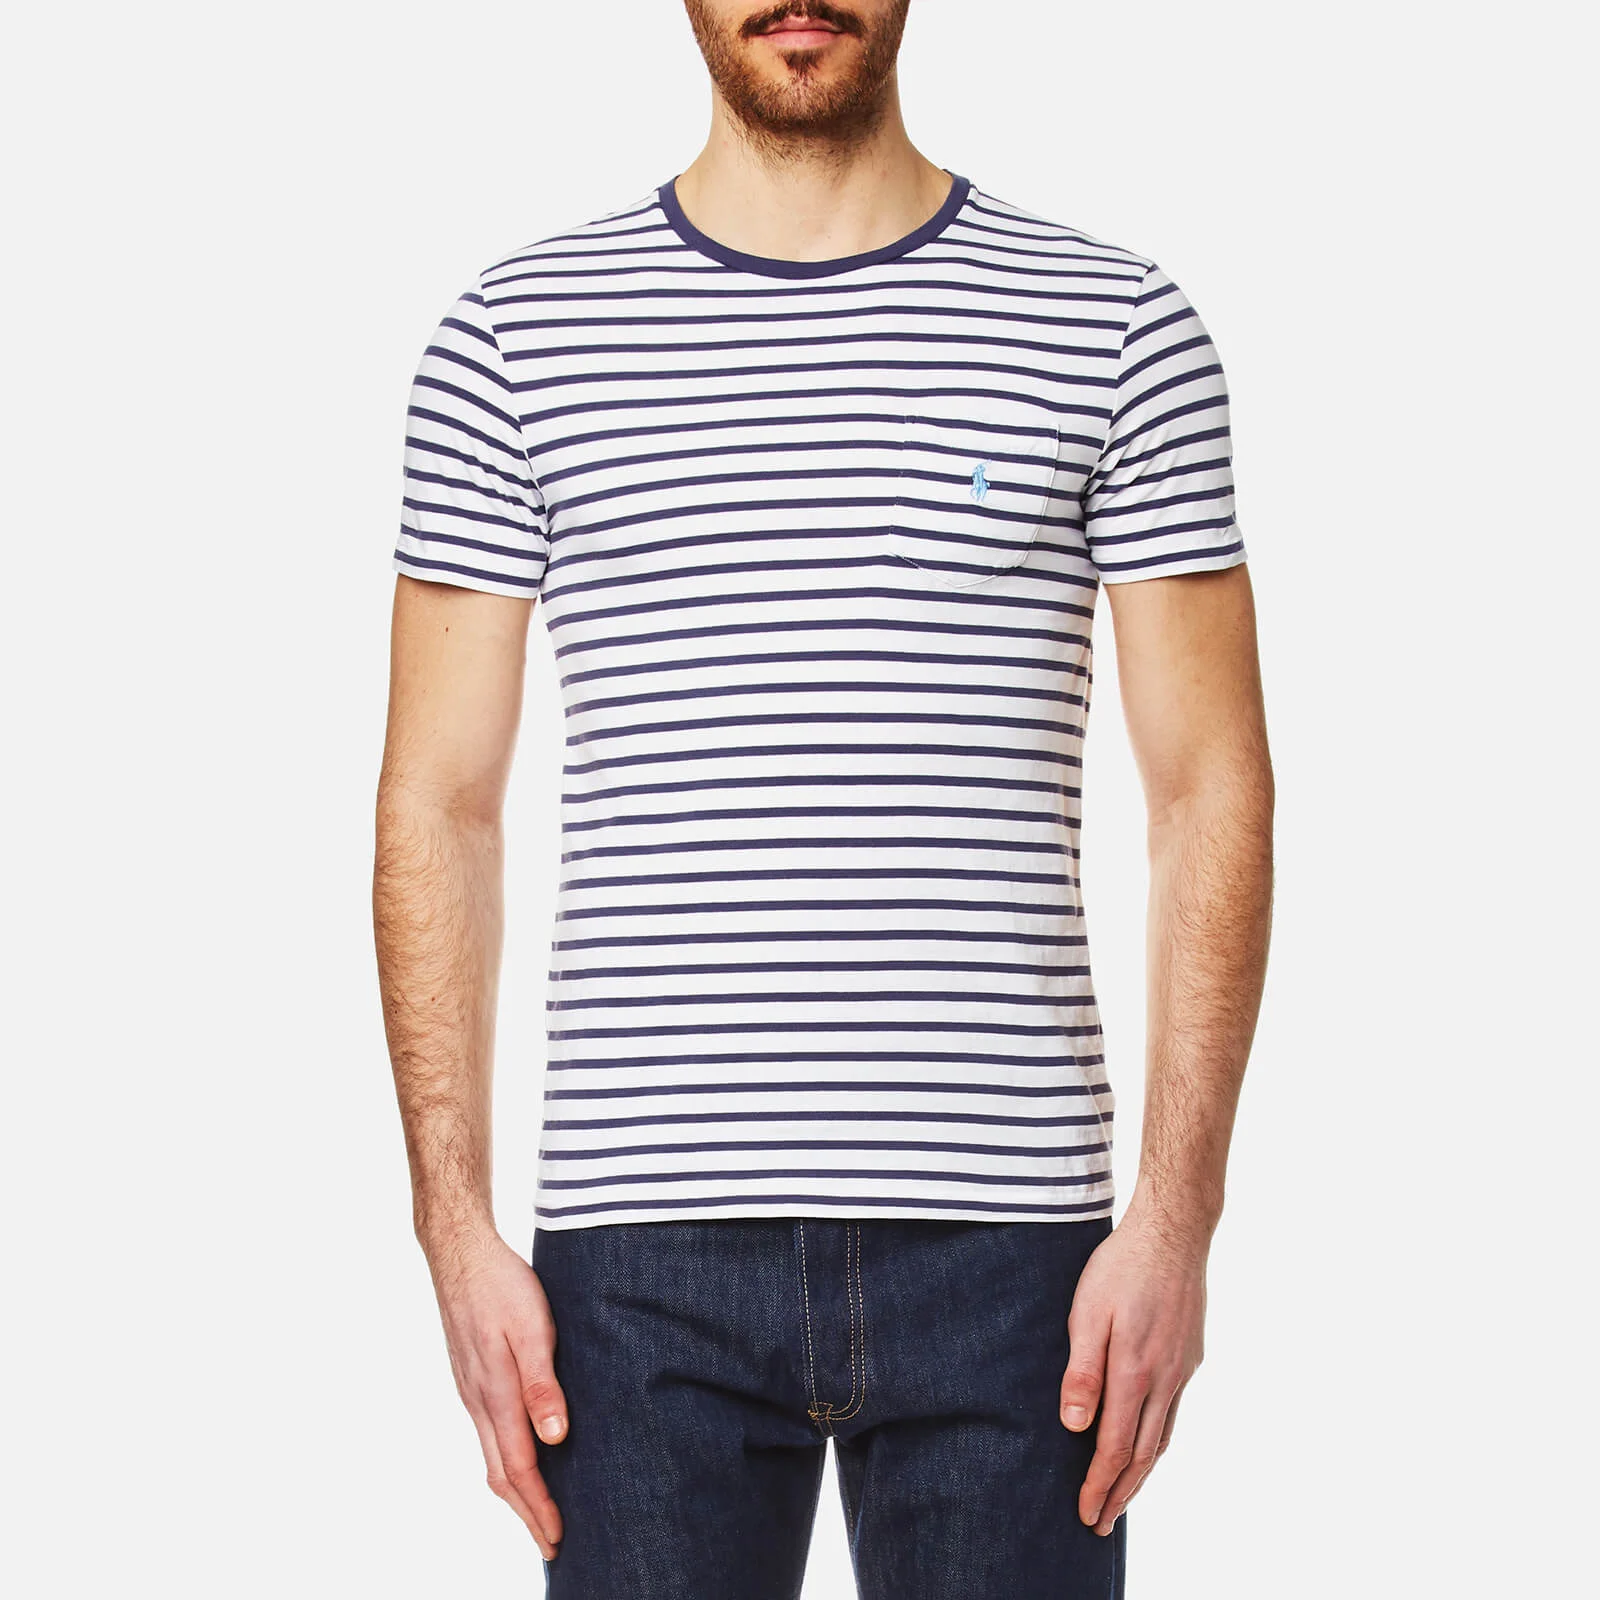 Polo Ralph Lauren Men's Pocket T-Shirt - White Stripe Image 1